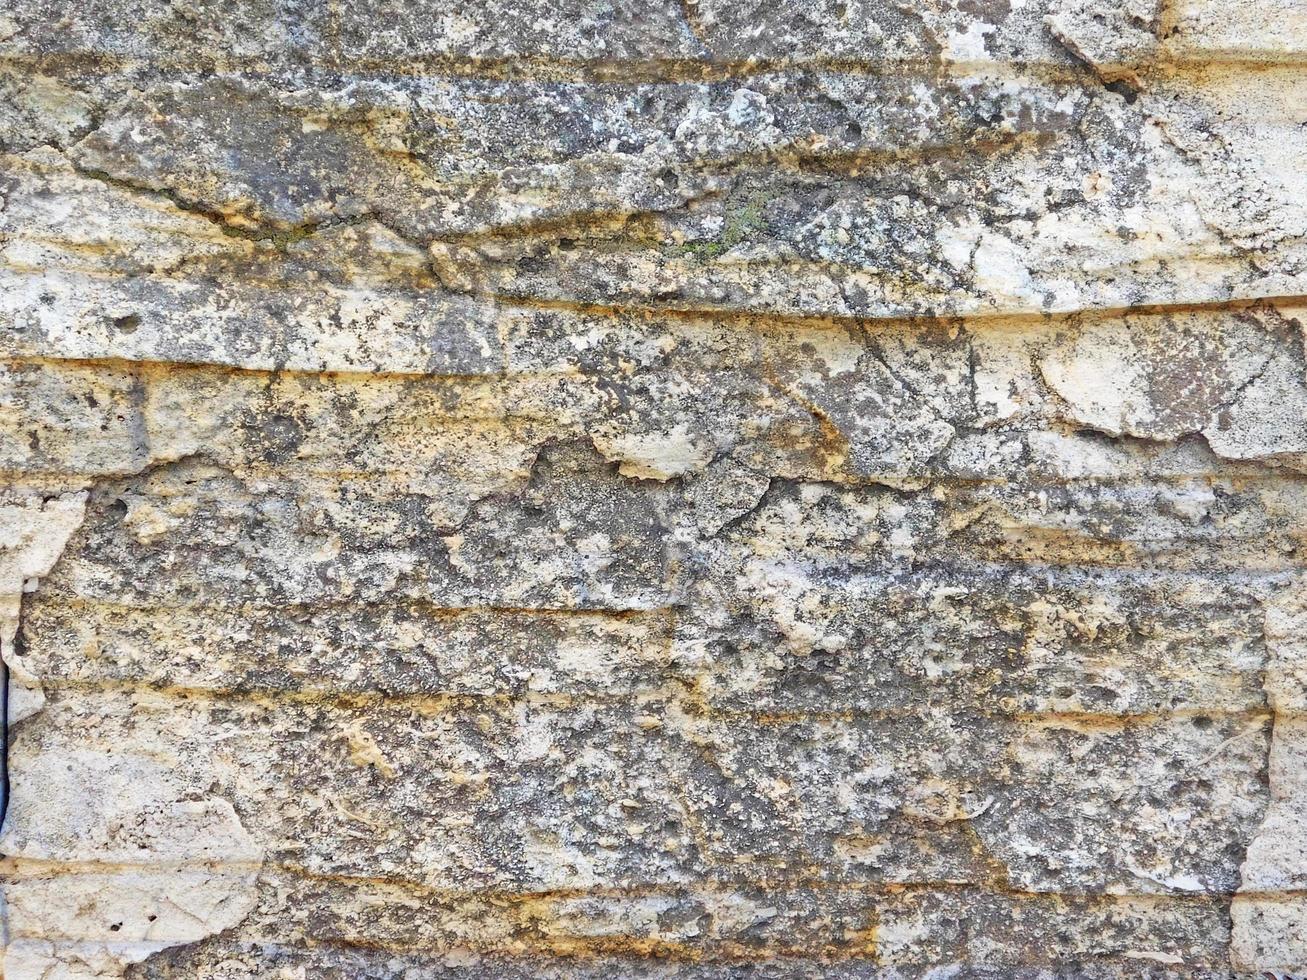 mur de roche ou de pierre pour le fond ou la texture photo